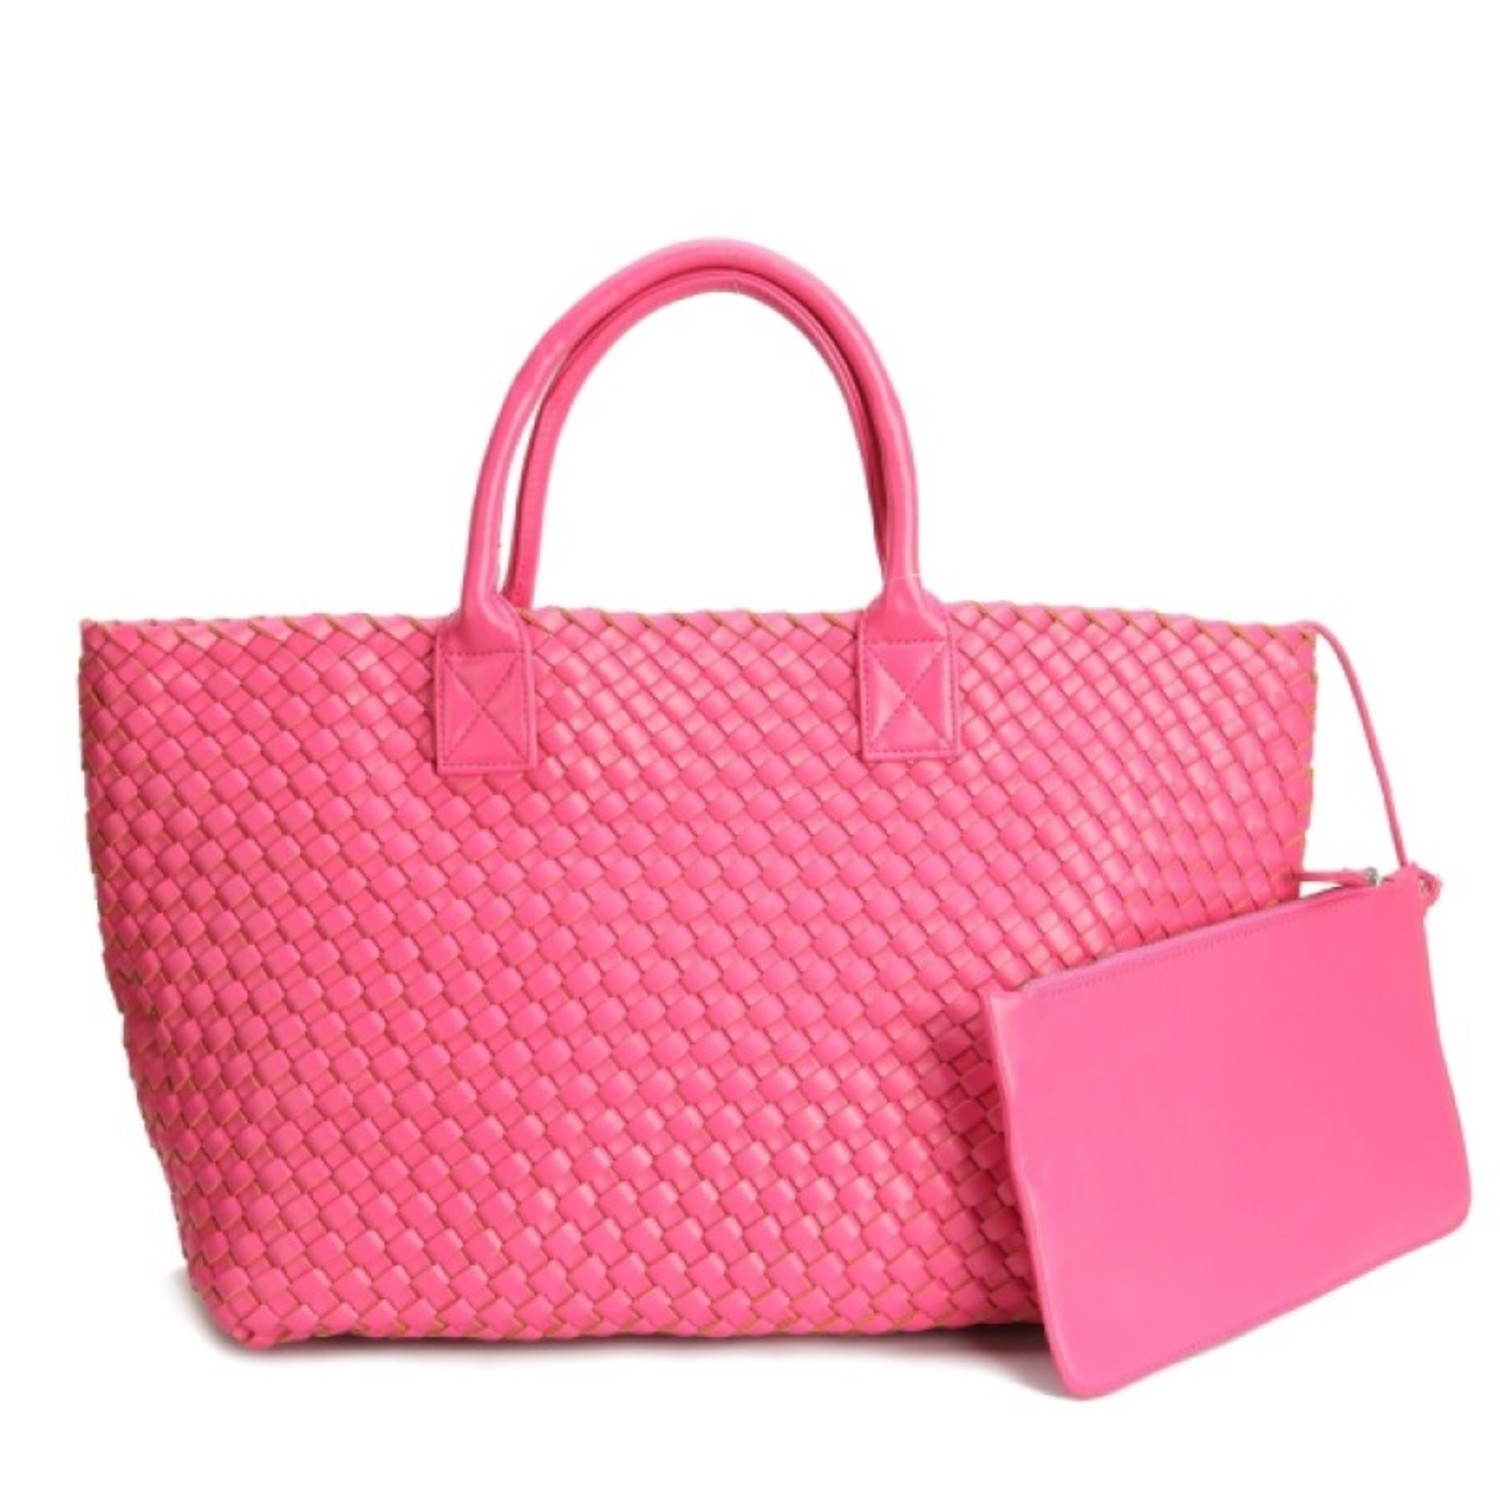 PREPPY GIRL Market bag hot pink